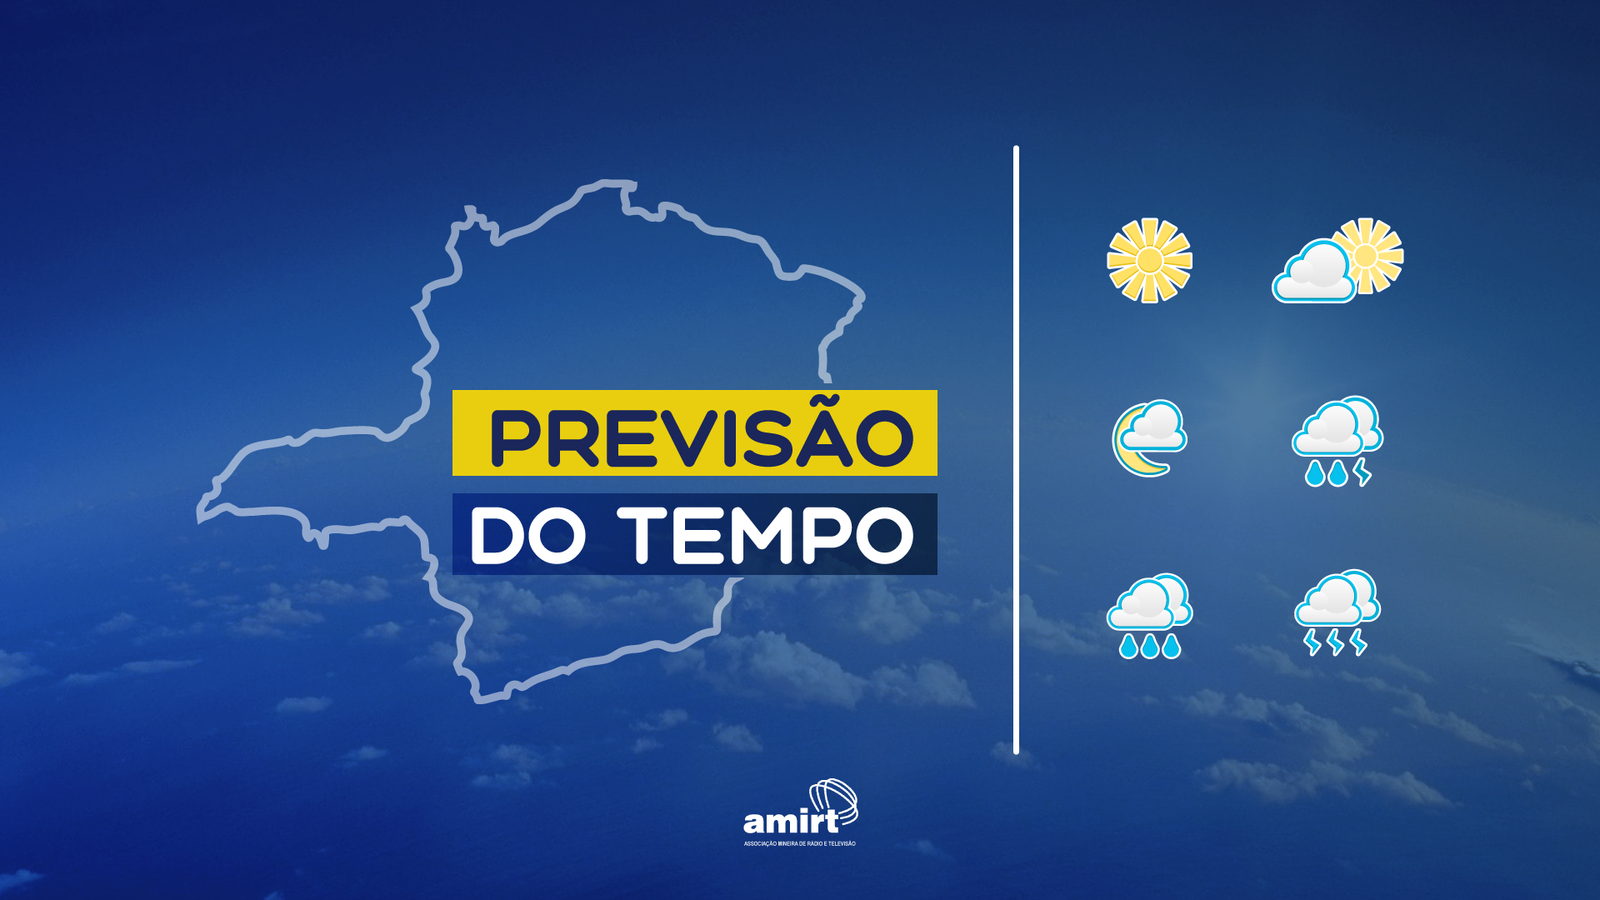 Previsão do tempo em Minas Gerais: saiba como fica o tempo nesta terça-feira (28/11)